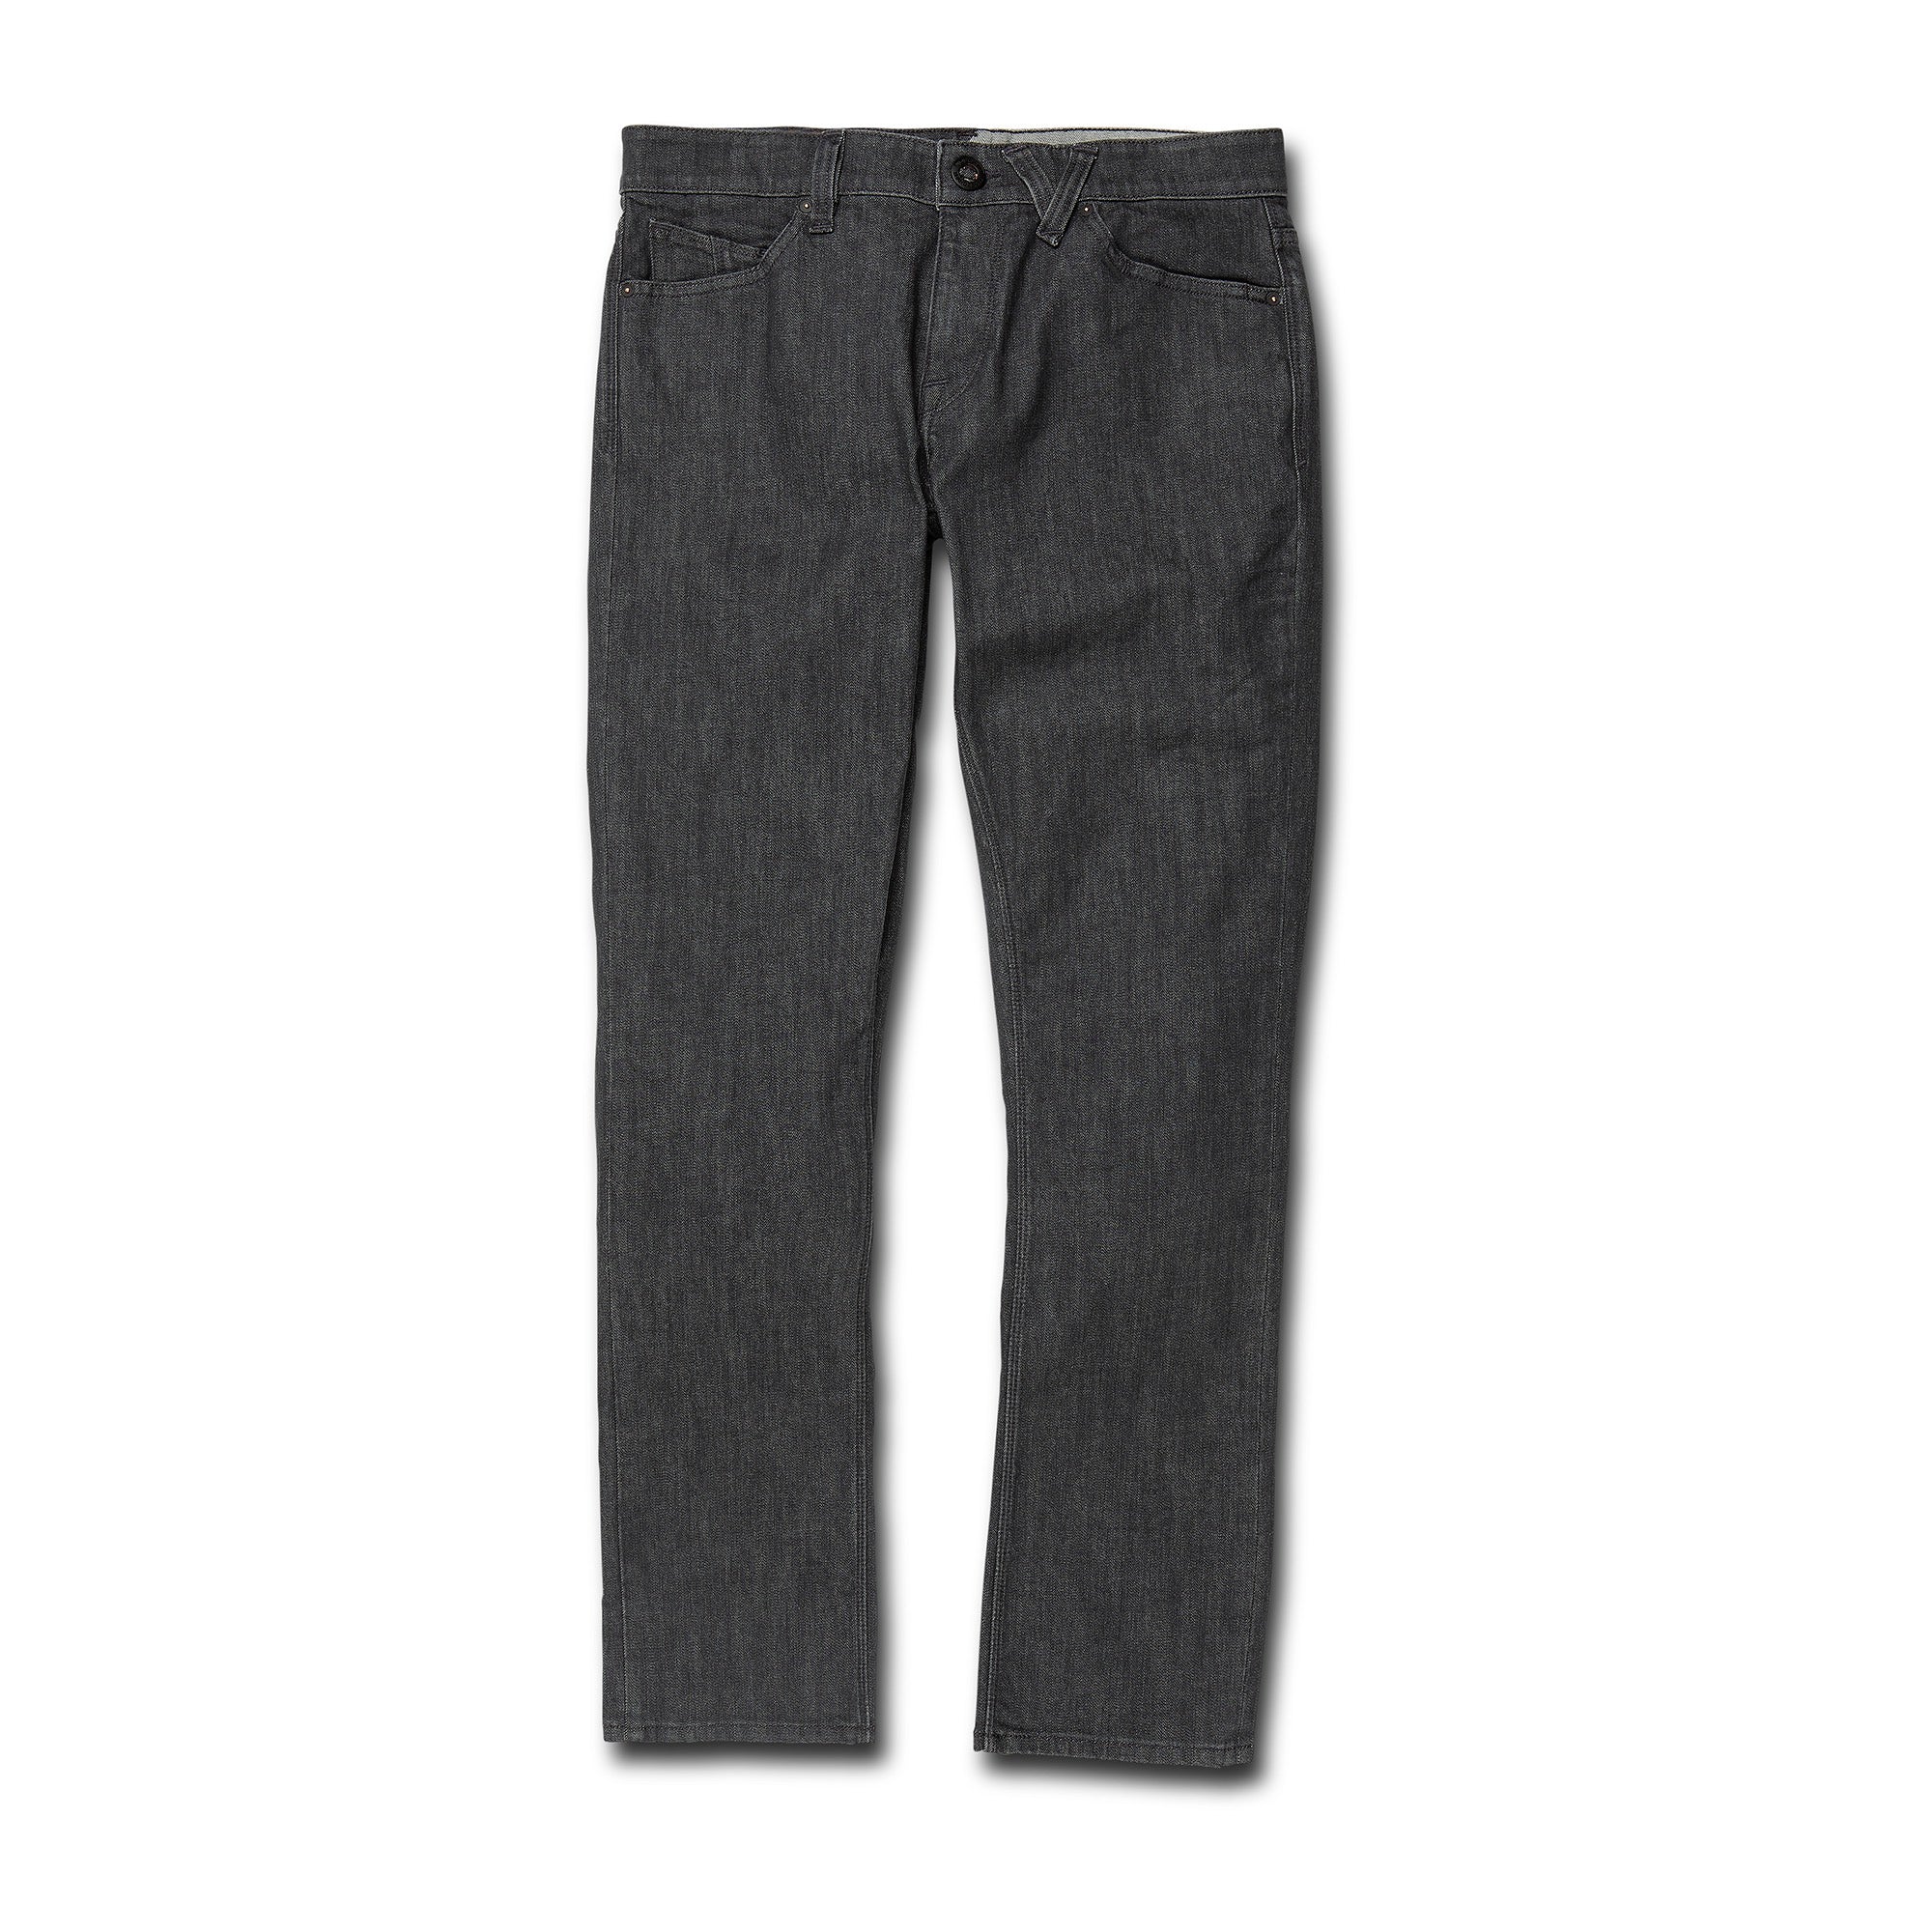 jeans-vorta-denim-dark-grey-dgr